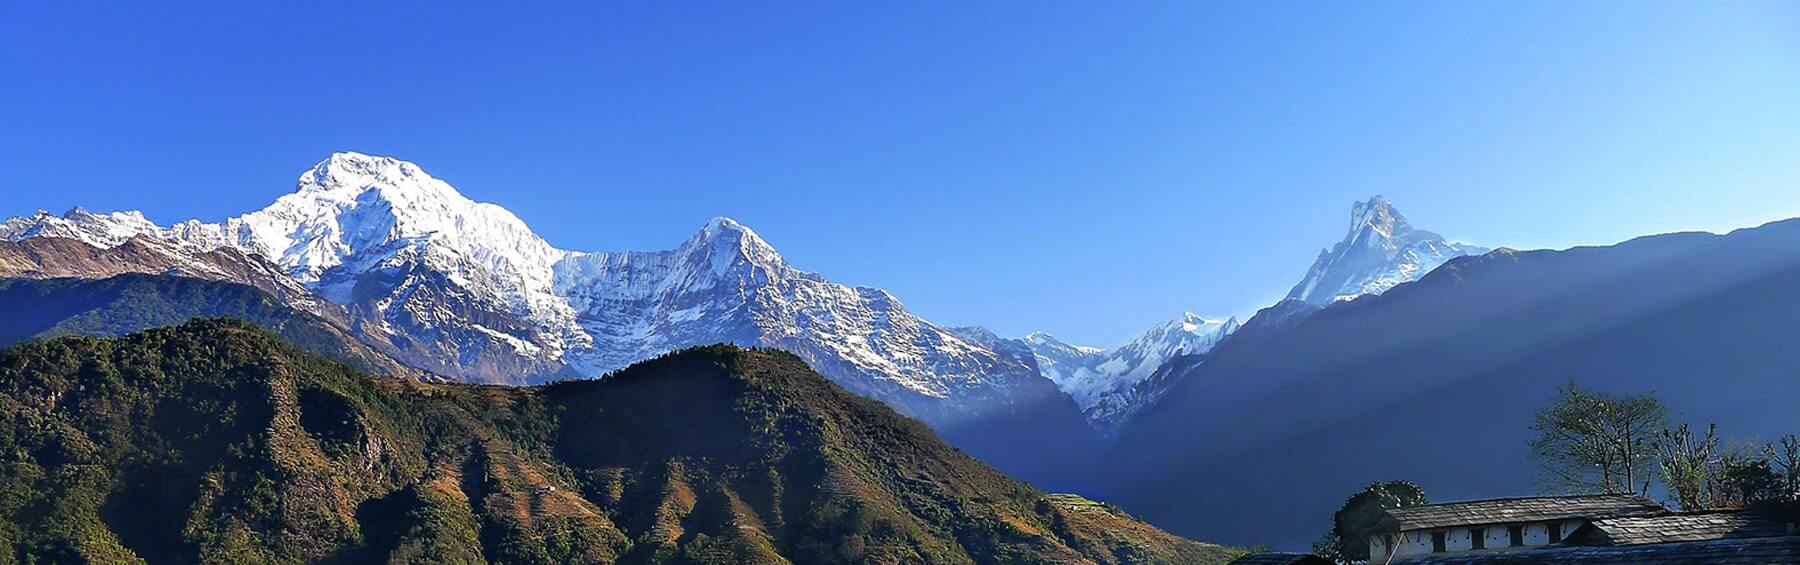  <span>Annapurna Region</span>